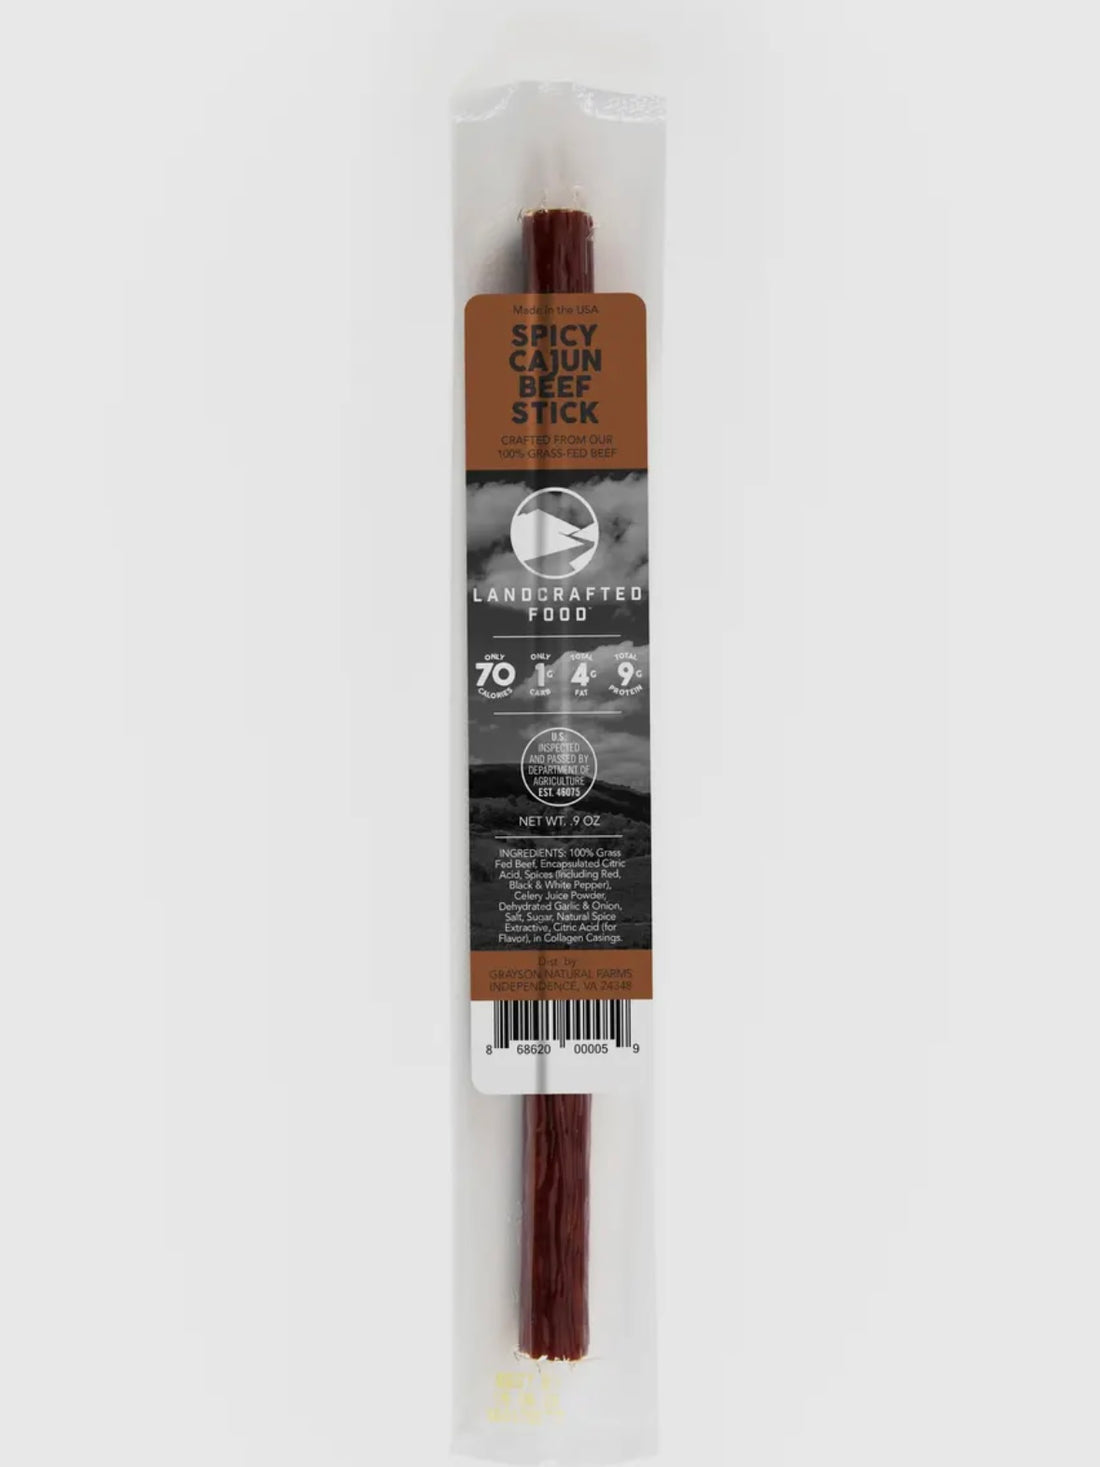 Spicy Cajun Beef Stick